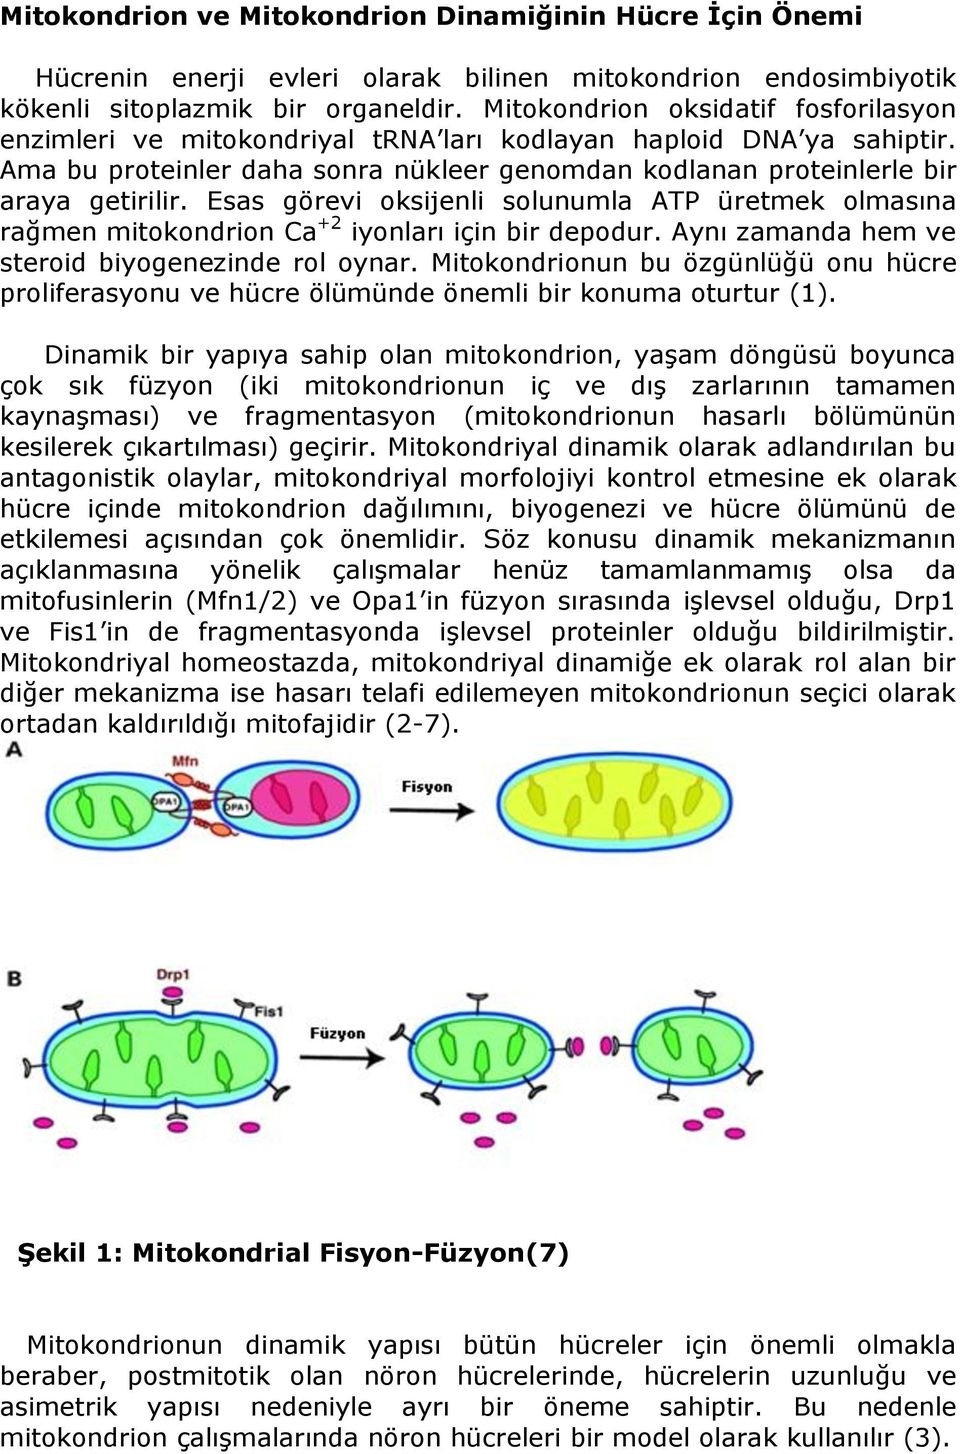 Esas görevi oksijenli solunumla ATP üretmek olmasına rağmen mitokondrion Ca +2 iyonları için bir depodur. Aynı zamanda hem ve steroid biyogenezinde rol oynar.